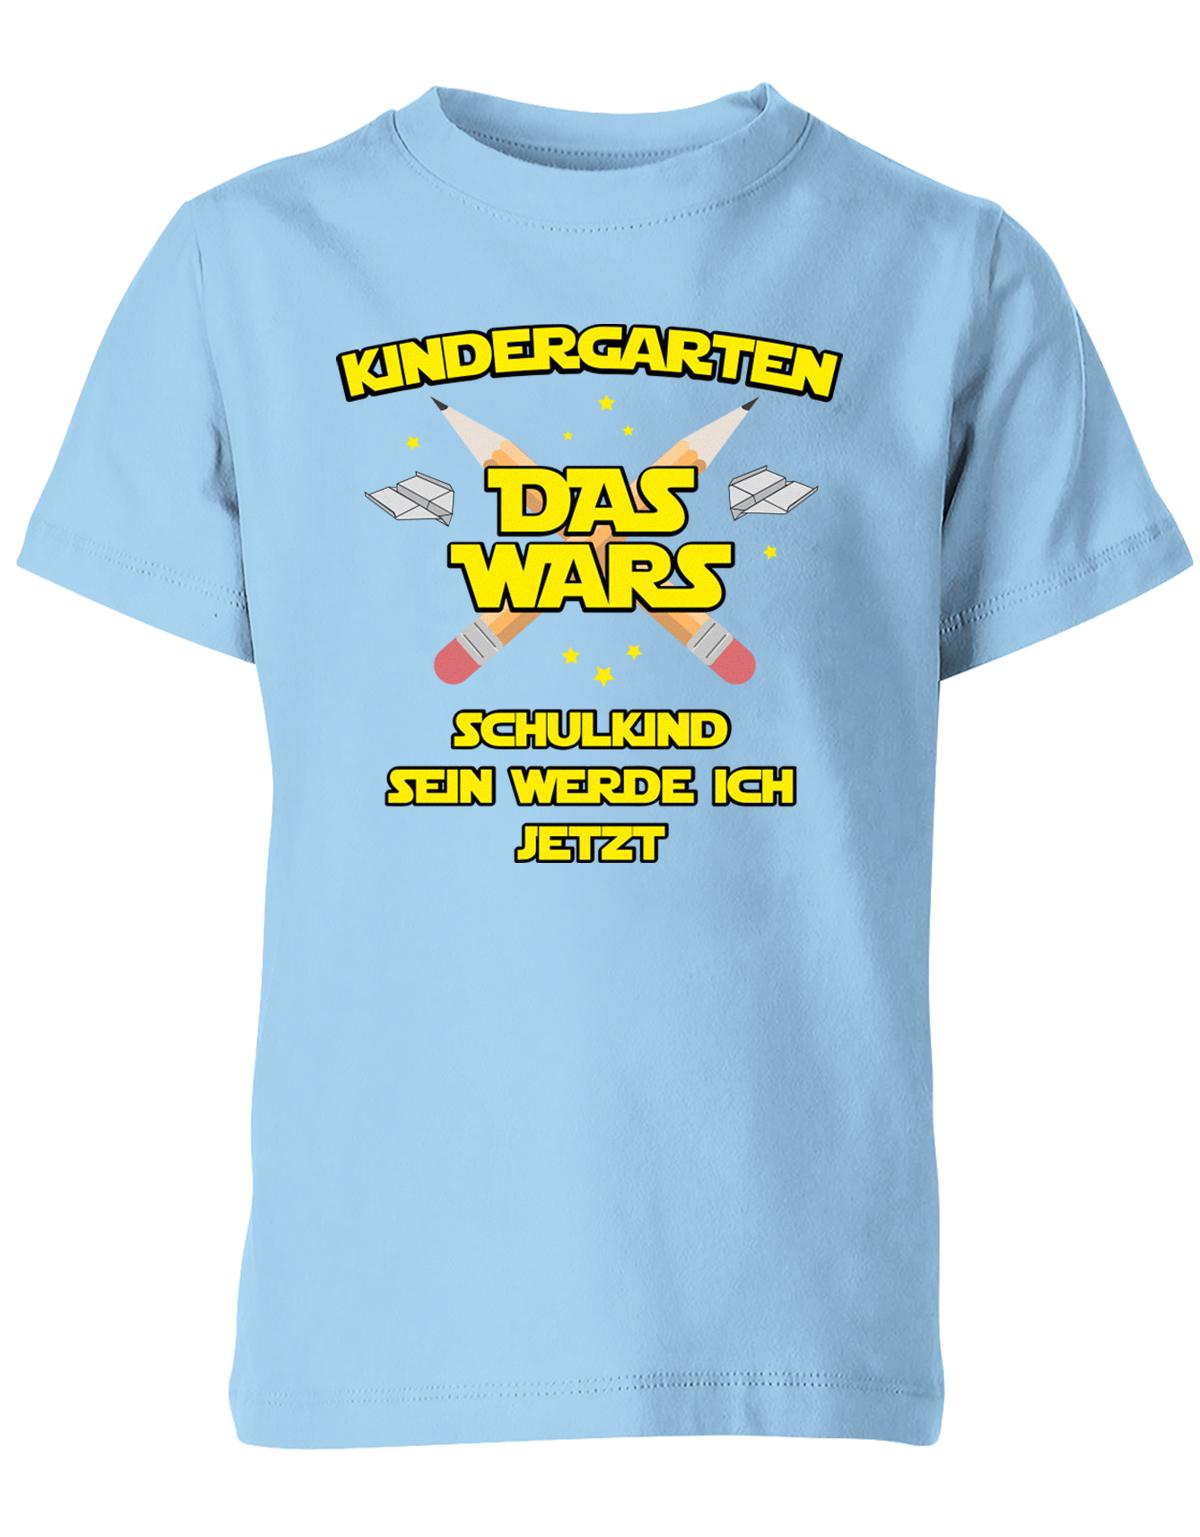 Kindergarten Das Wars Schulkind sein werde ich jetzt - Kita Abgänger Shirt Hellblau